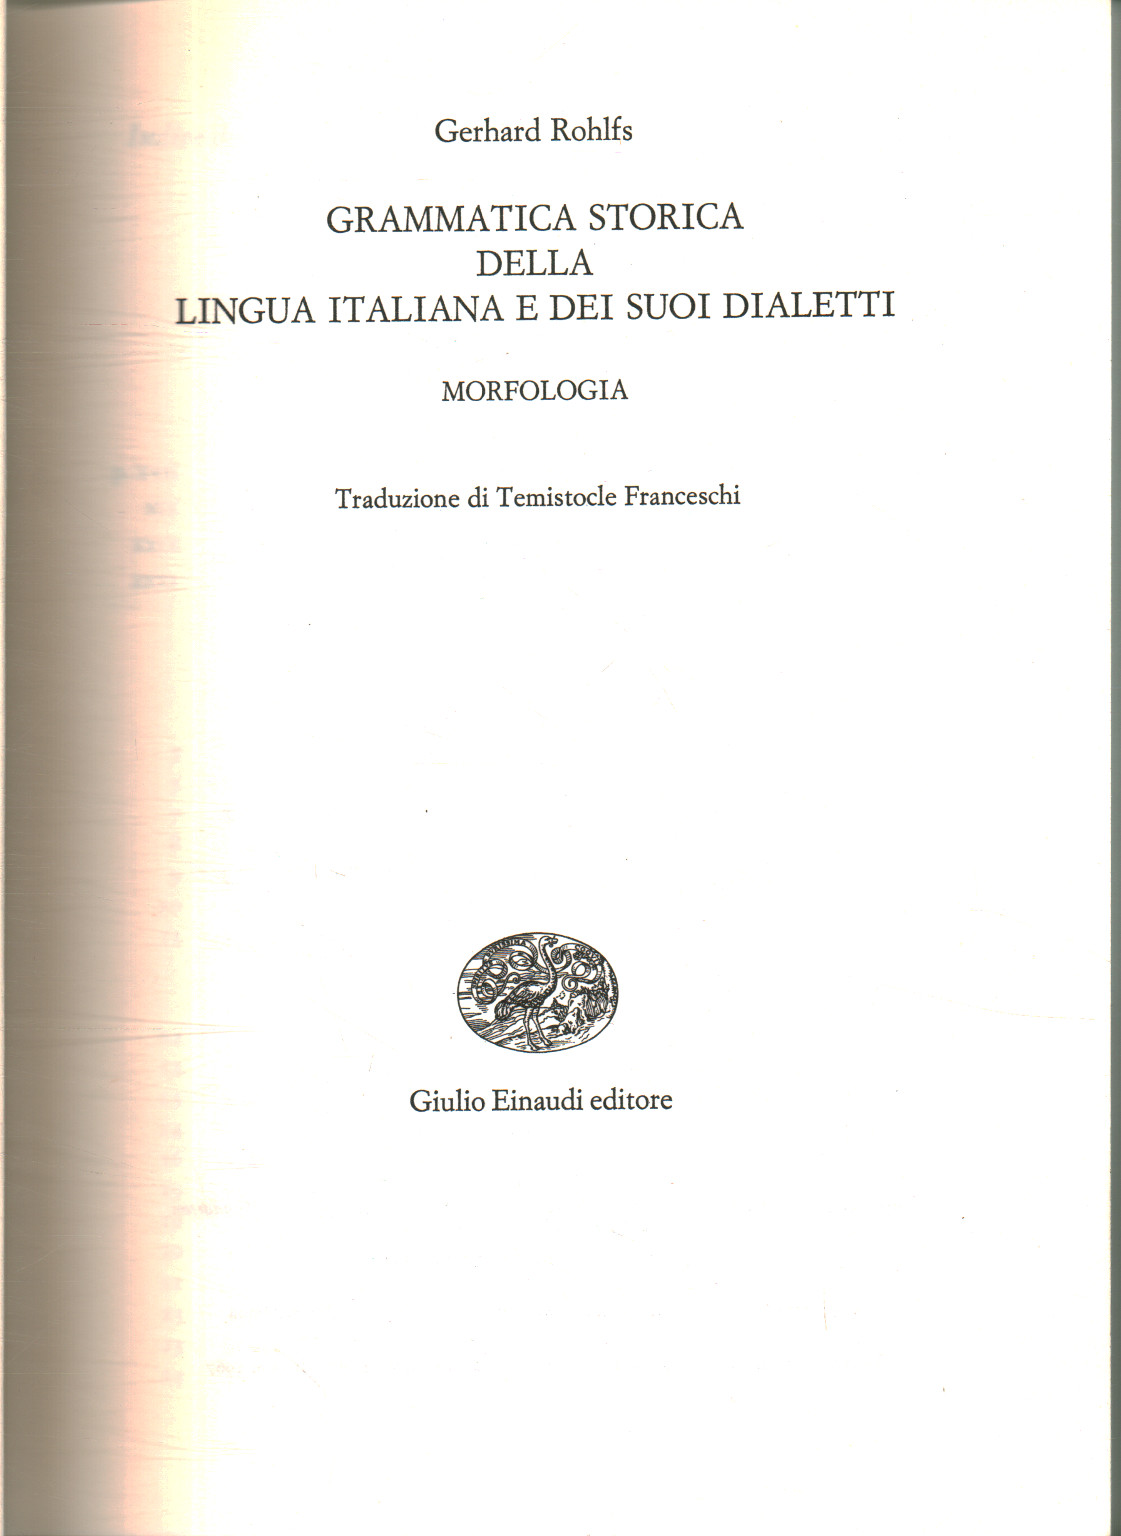 Gramática histórica de la lengua italiana y la suya, Gerhard Rohlfs